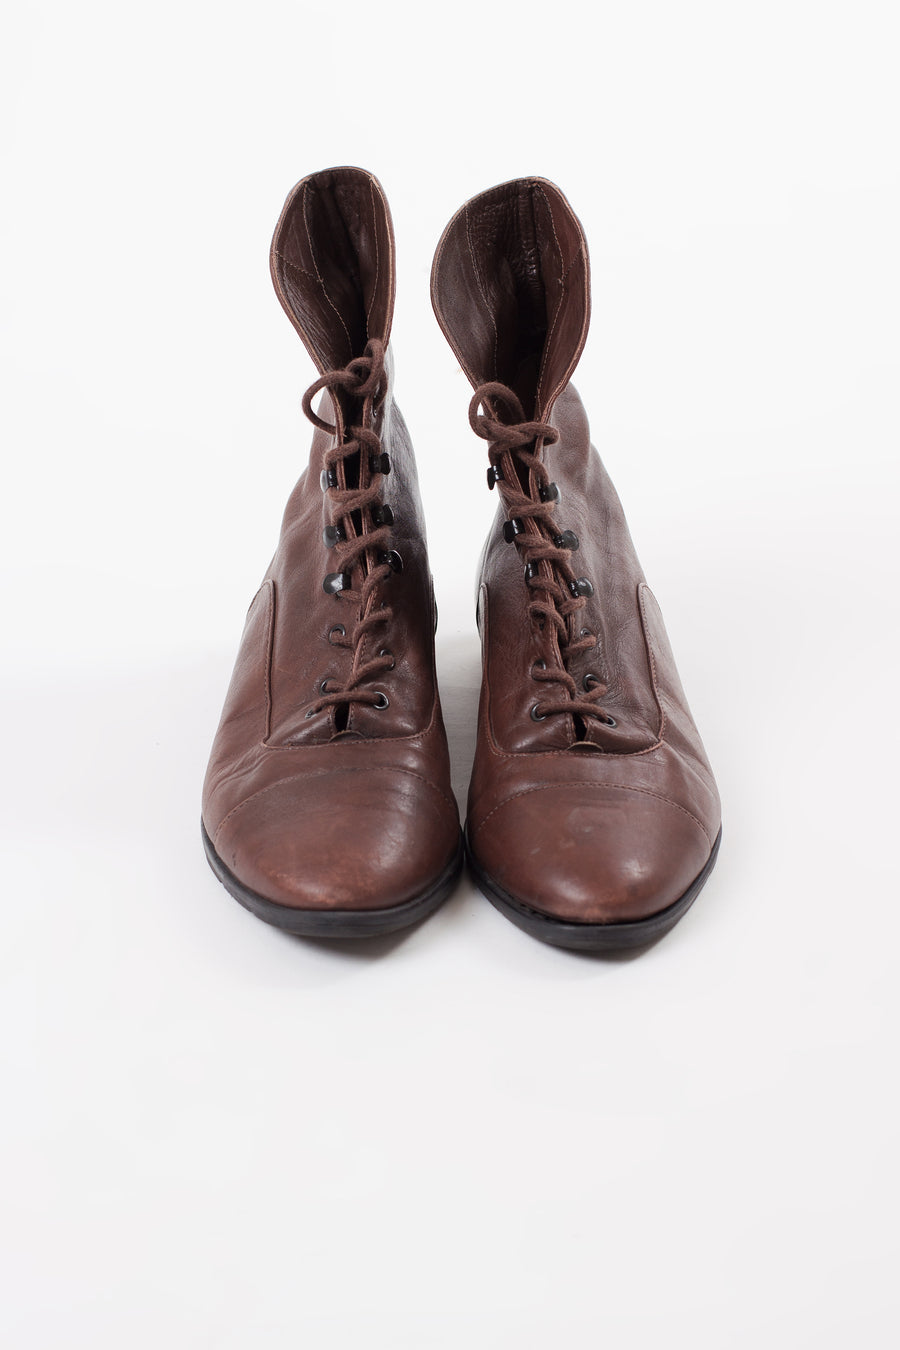 Vintage Brown Ankle Booties | 6.5M